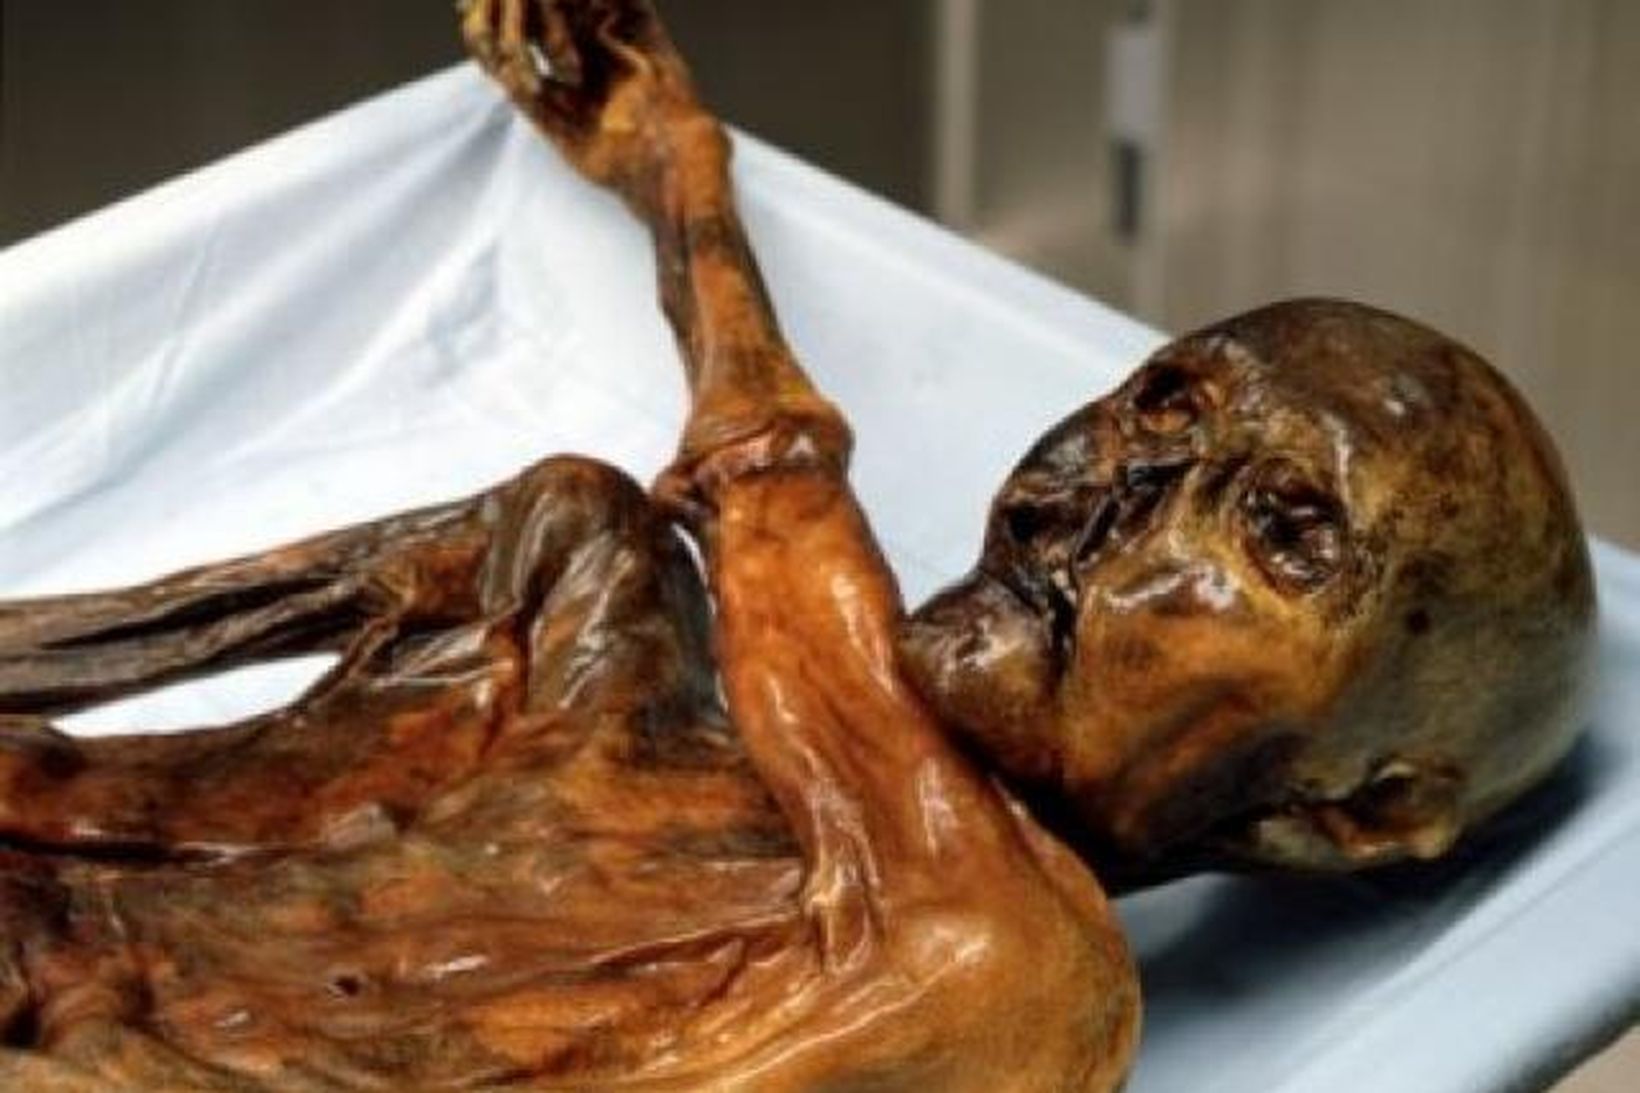 Ötzi hefur varðveist ótrúlega vel í ísnum í Ölpunum í …